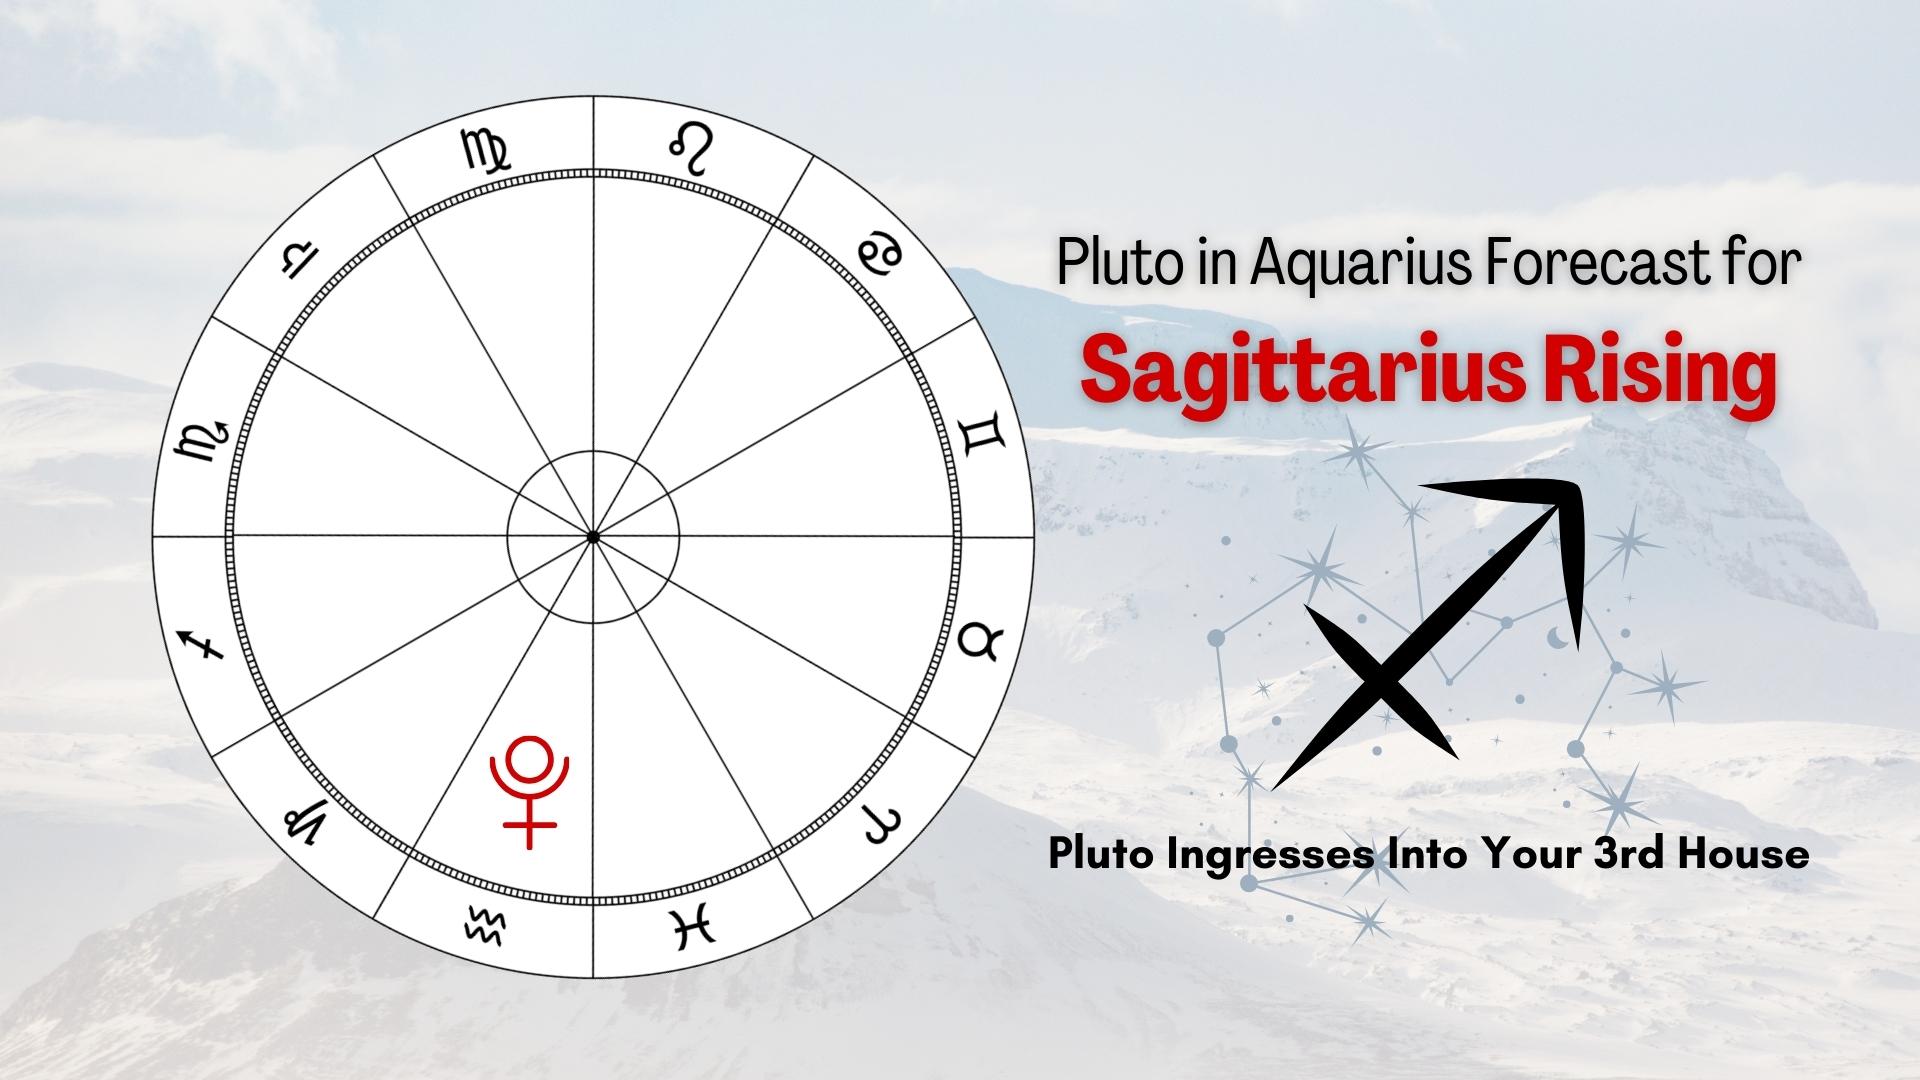 Pluto In Aquarius Forecast for Sagittarius Rising